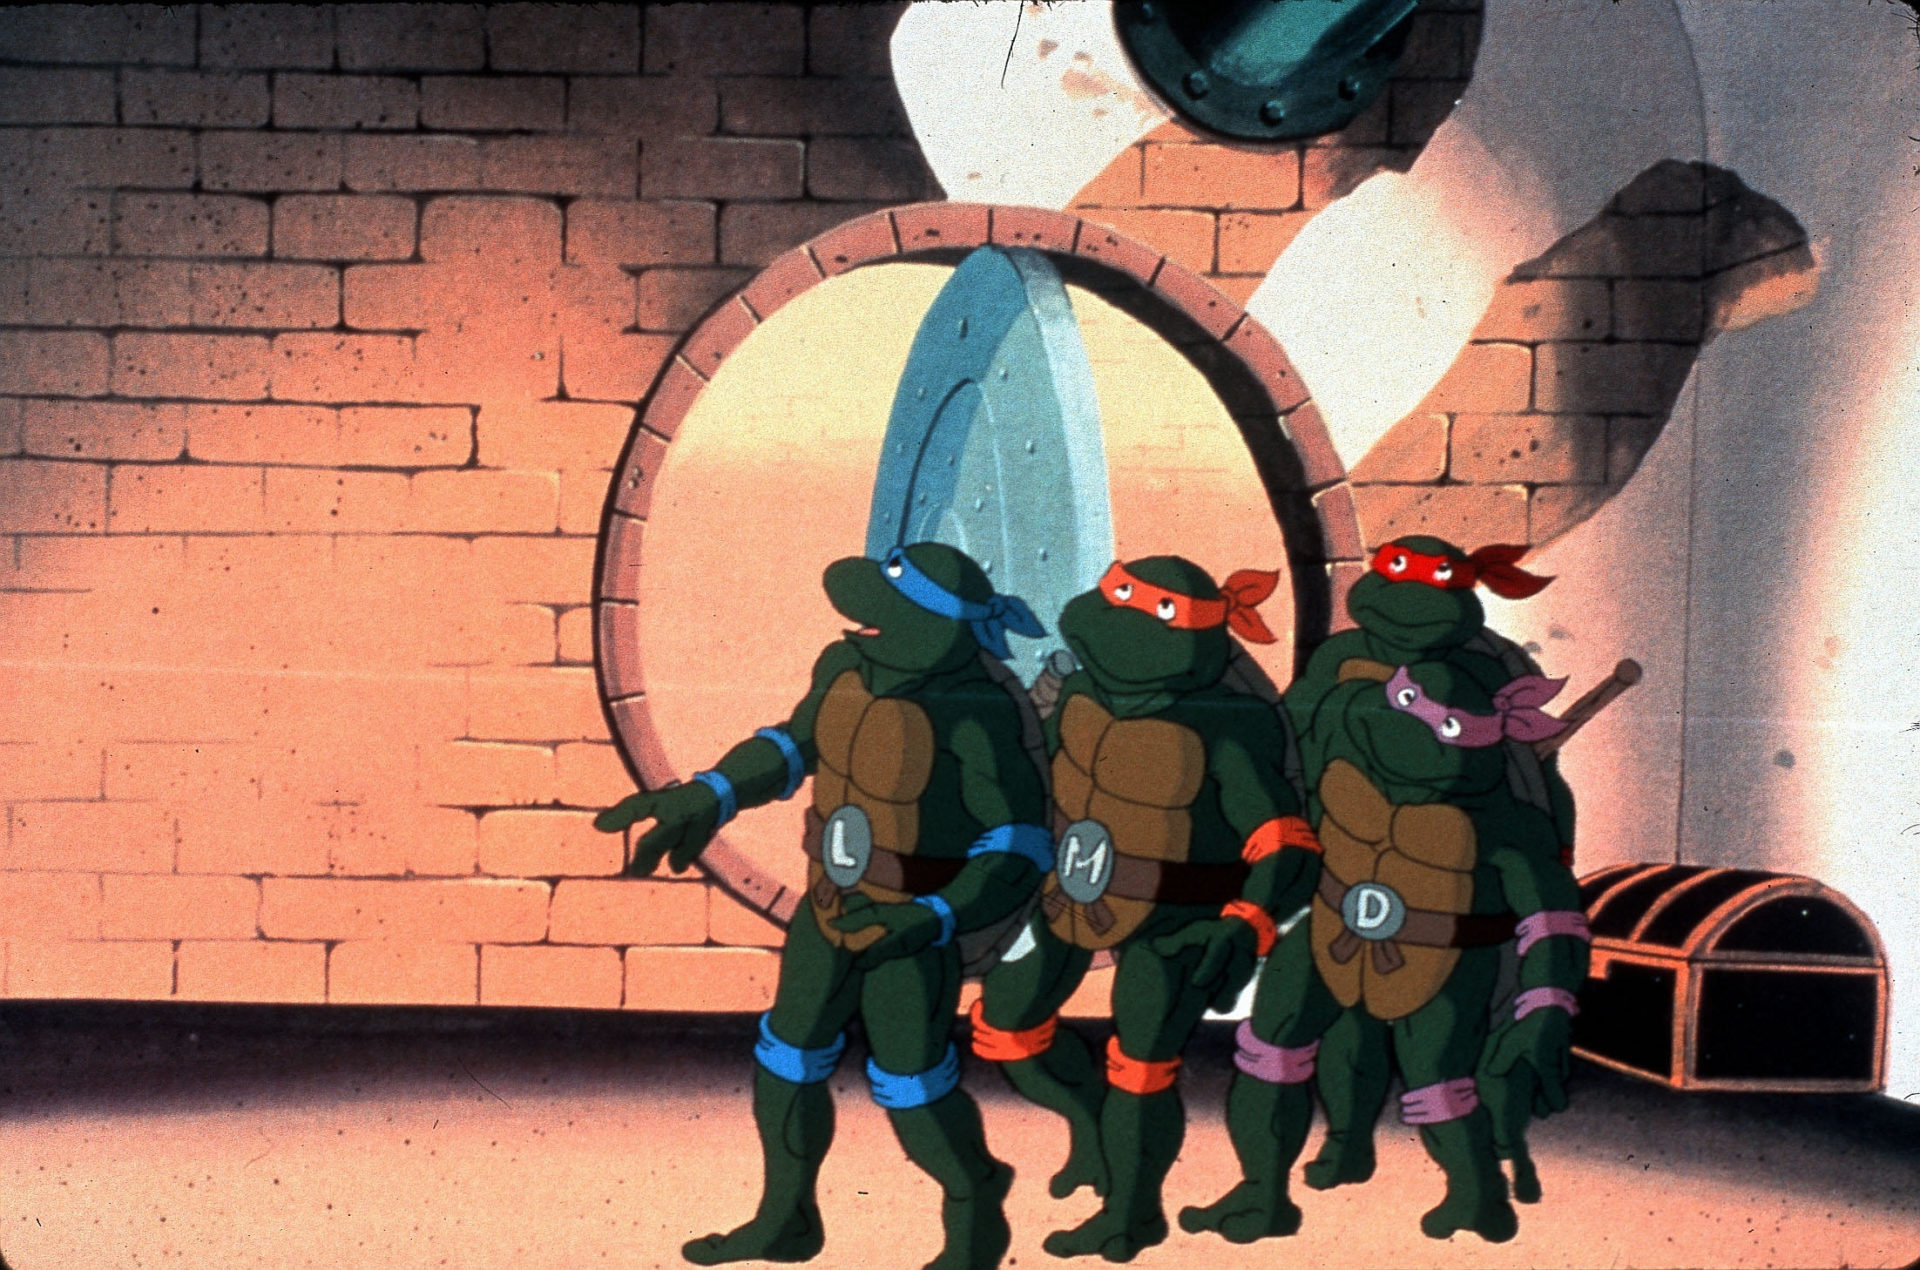 The Teenage Mutant Ninja Turtles.